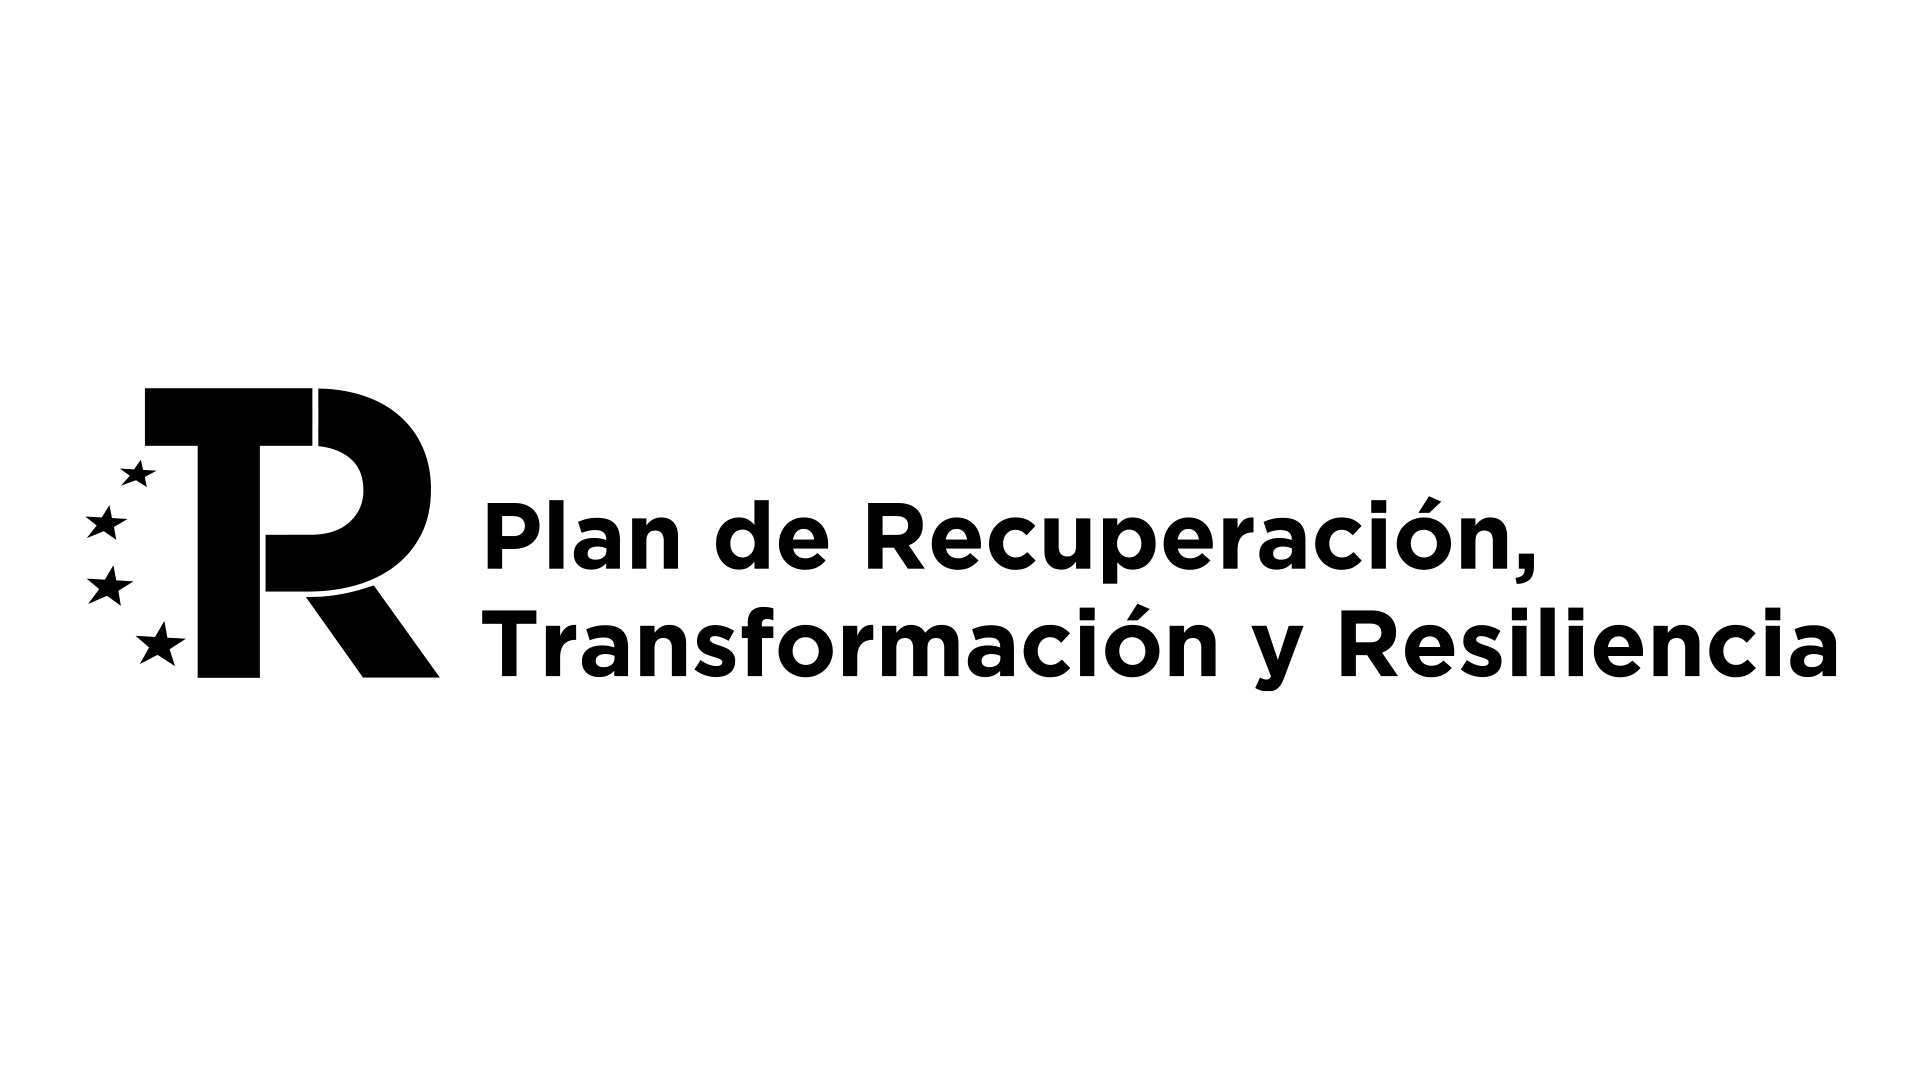 Logo PRTR dos líneas_NEGRO